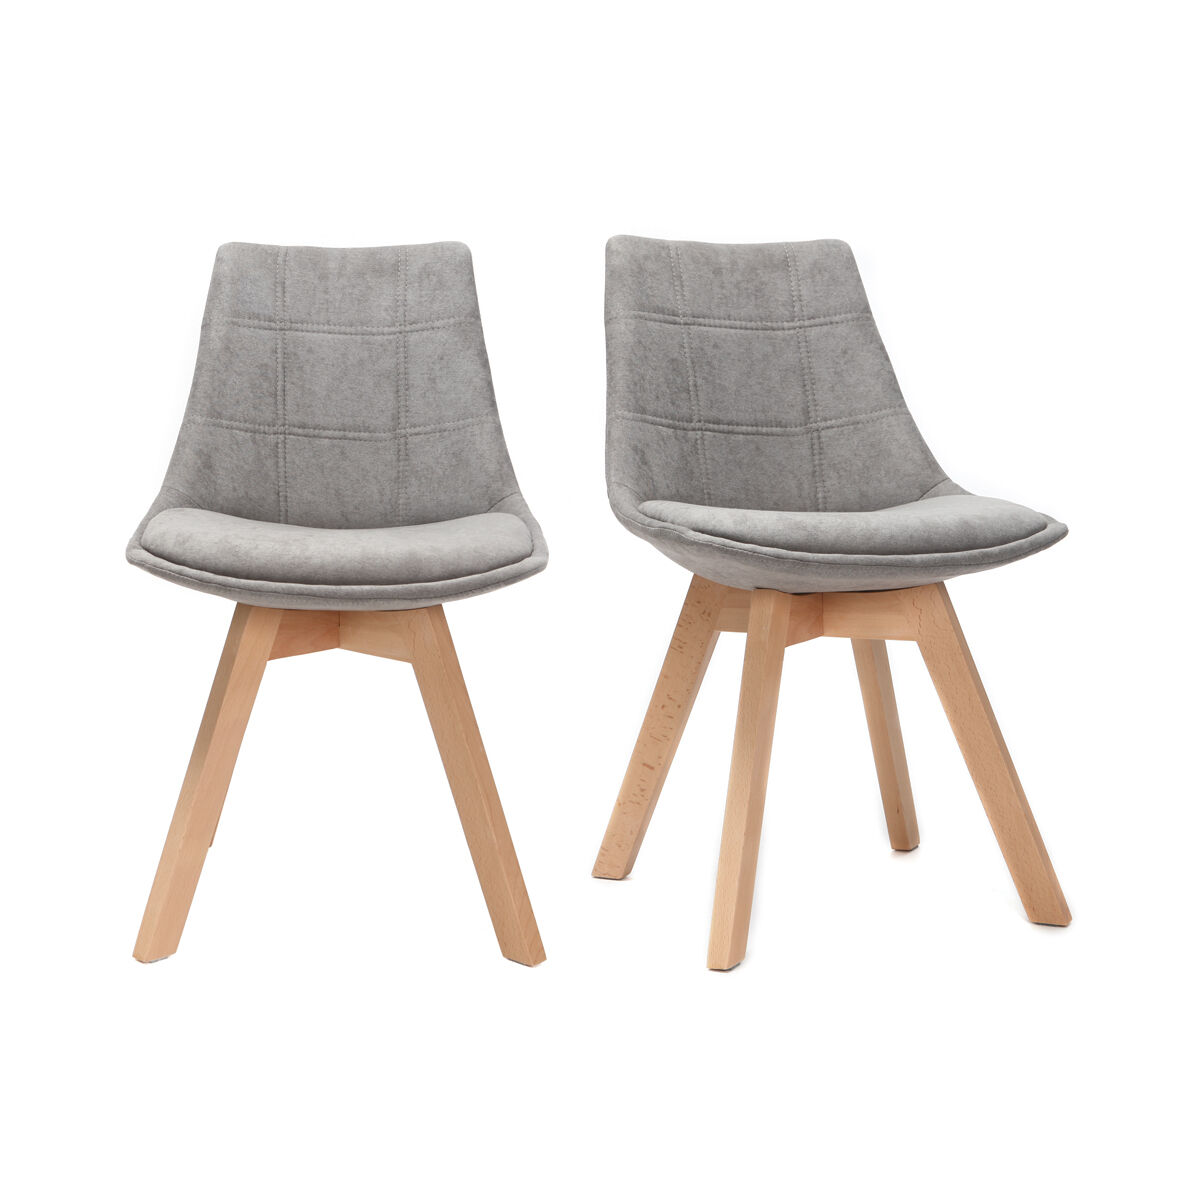 Miliboo Lote de 2 sillas diseño nórdico madera y tejido gris MATILDE